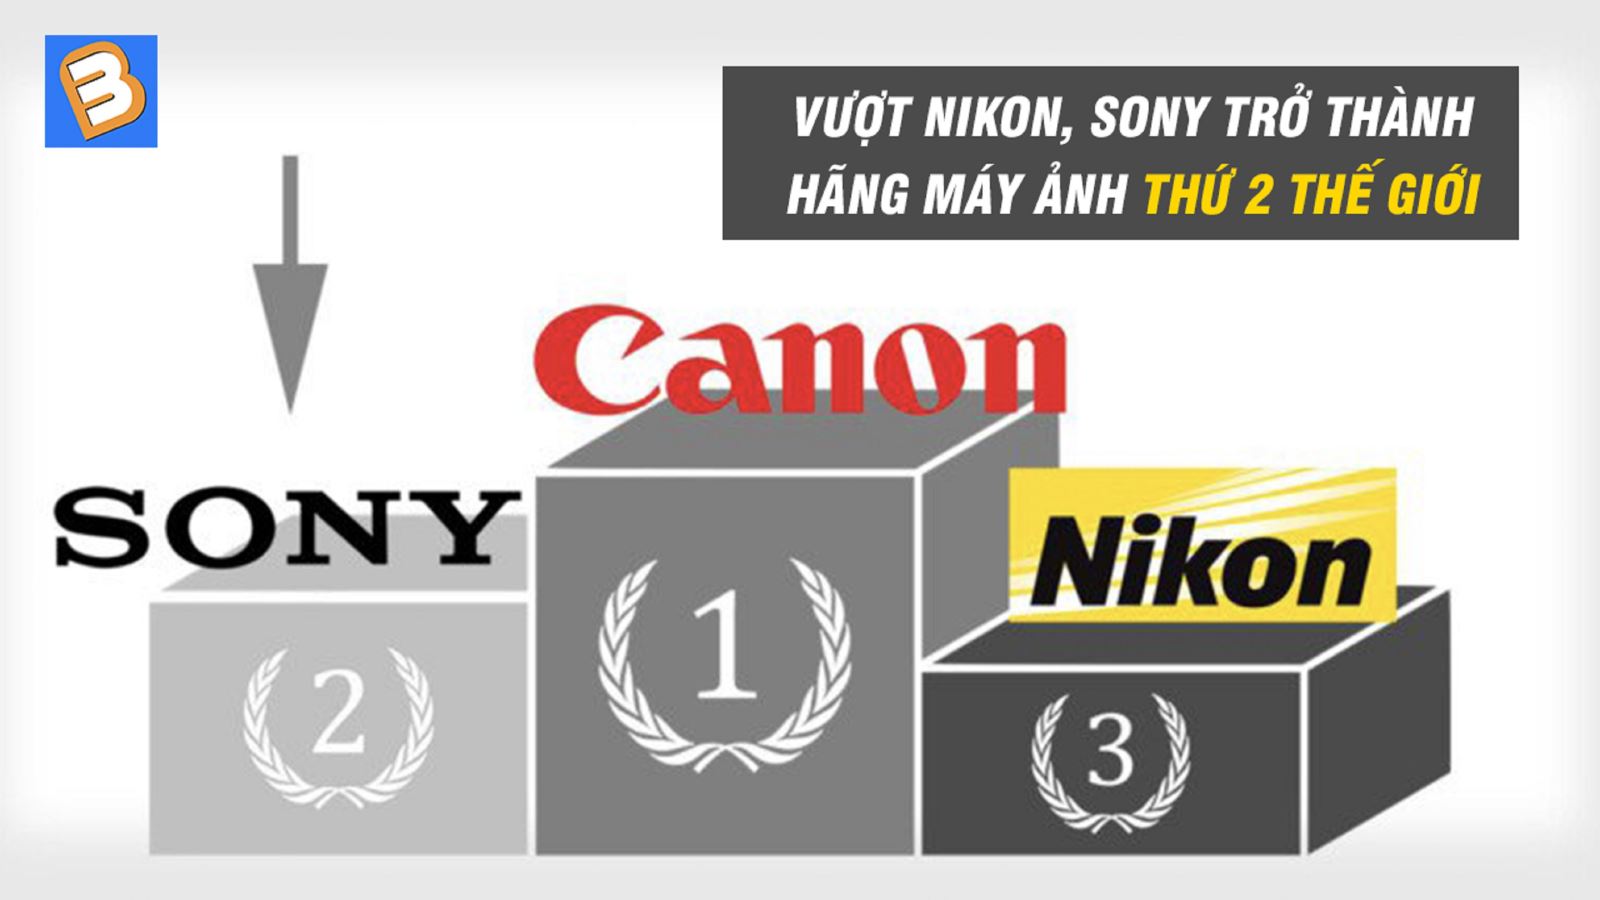 Vượt Nikon, Sony trở thành hãng máy ảnh thứ 2 thế giới